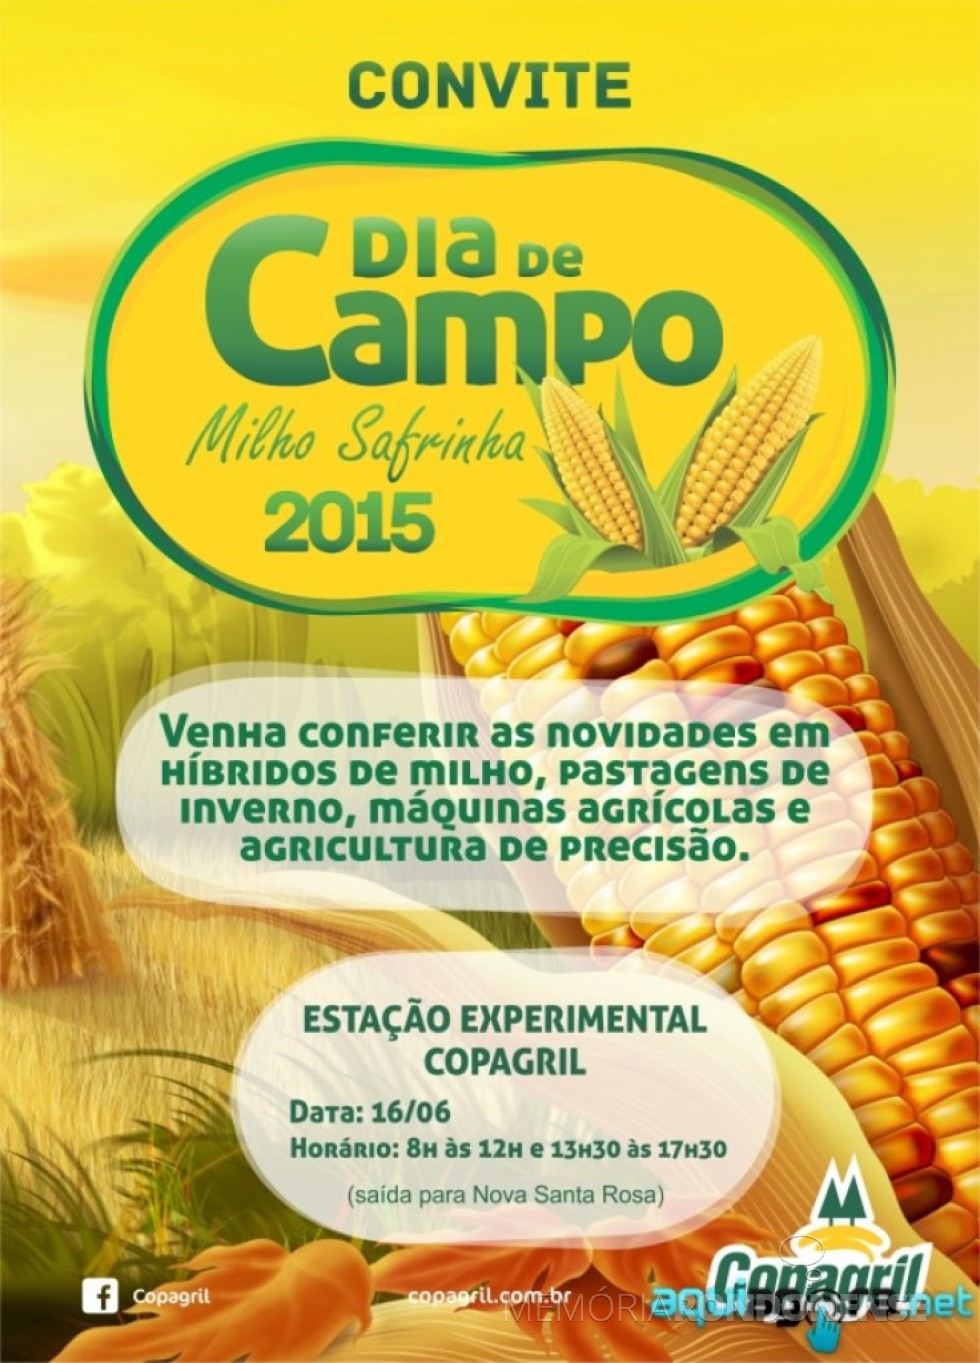 Estampa do convite para o Dia de Campo Milho Safrinha Copagril 2015. 
Imagem: Acervo AquiAgora.net